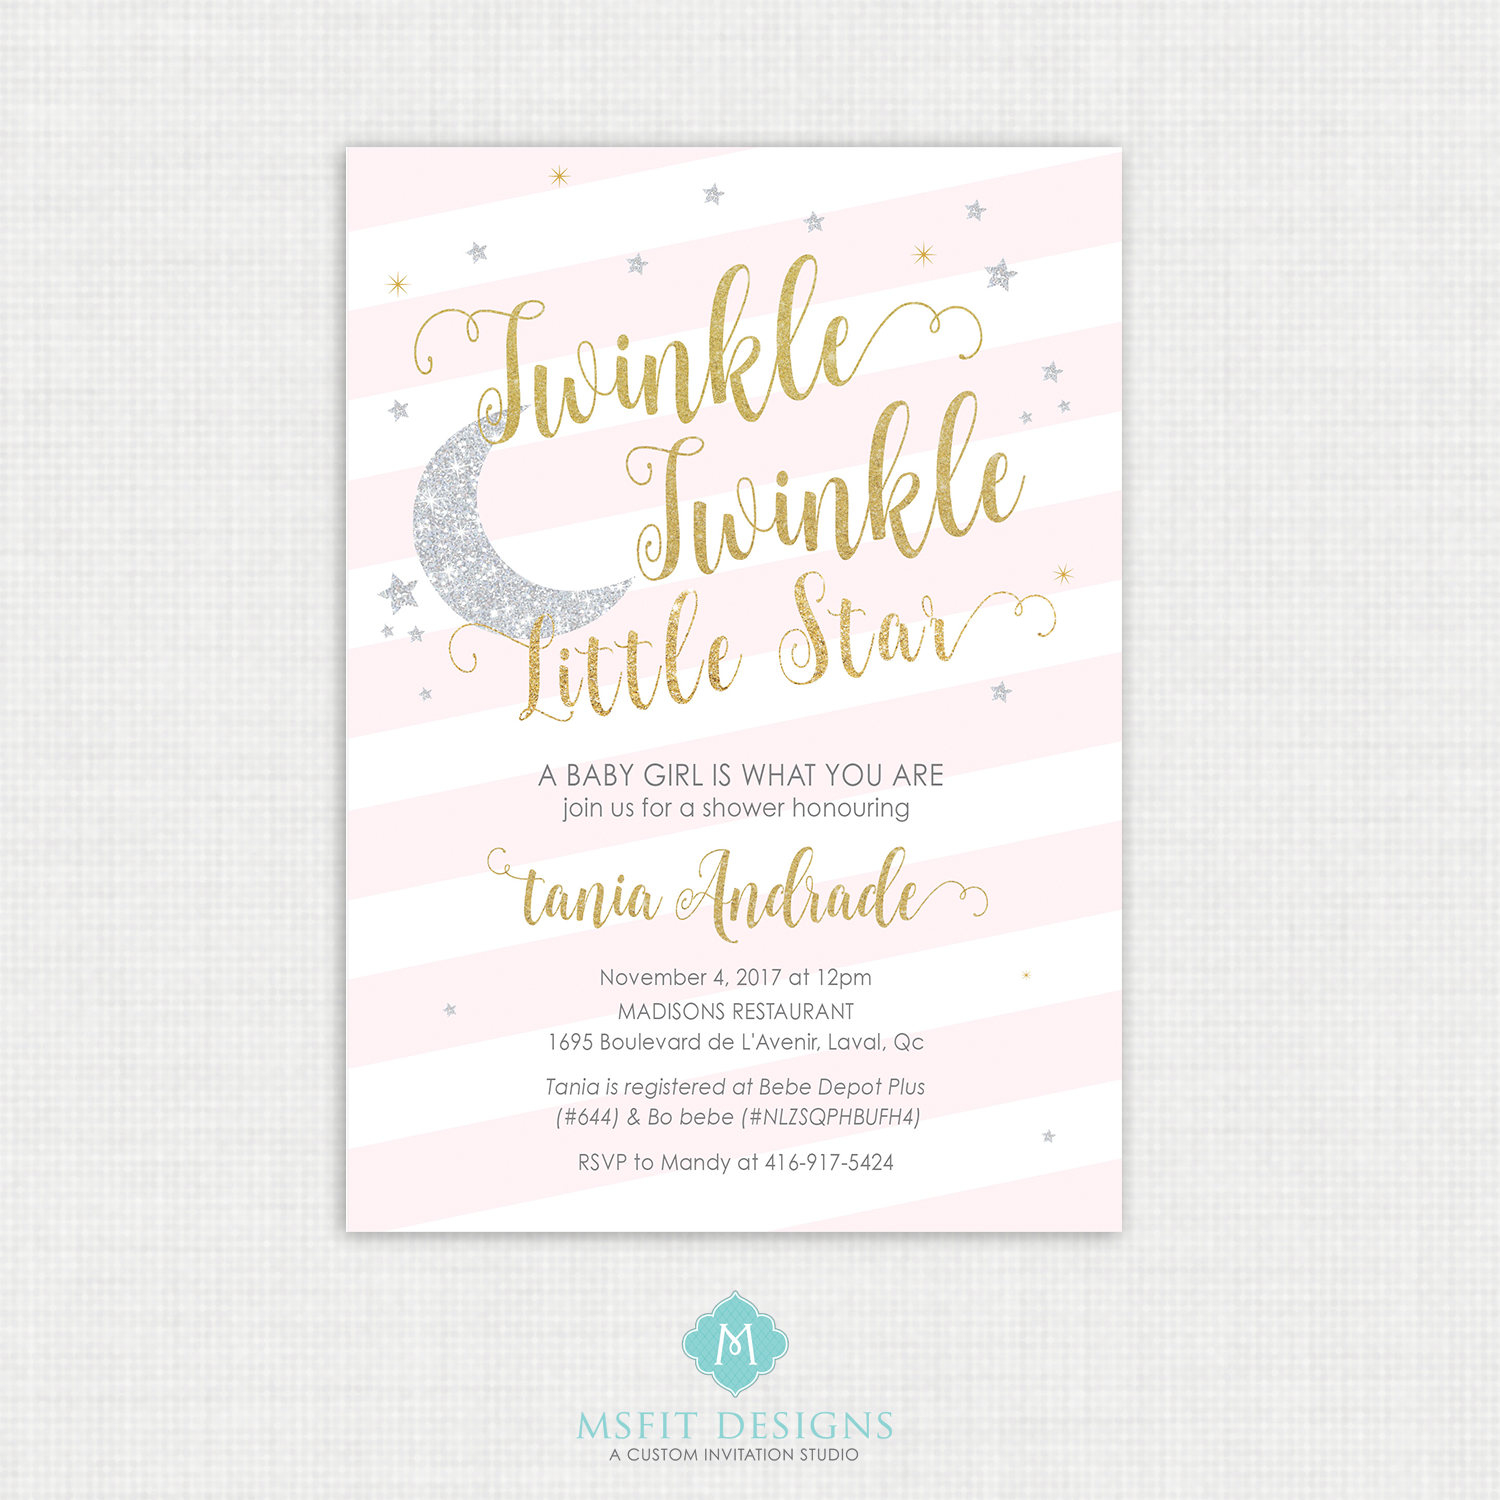 Twinkle Twinkle Little Star Baby Shower Invitations - Twinkle Invitation - Free Printable Twinkle Twinkle Little Star Baby Shower Invitations